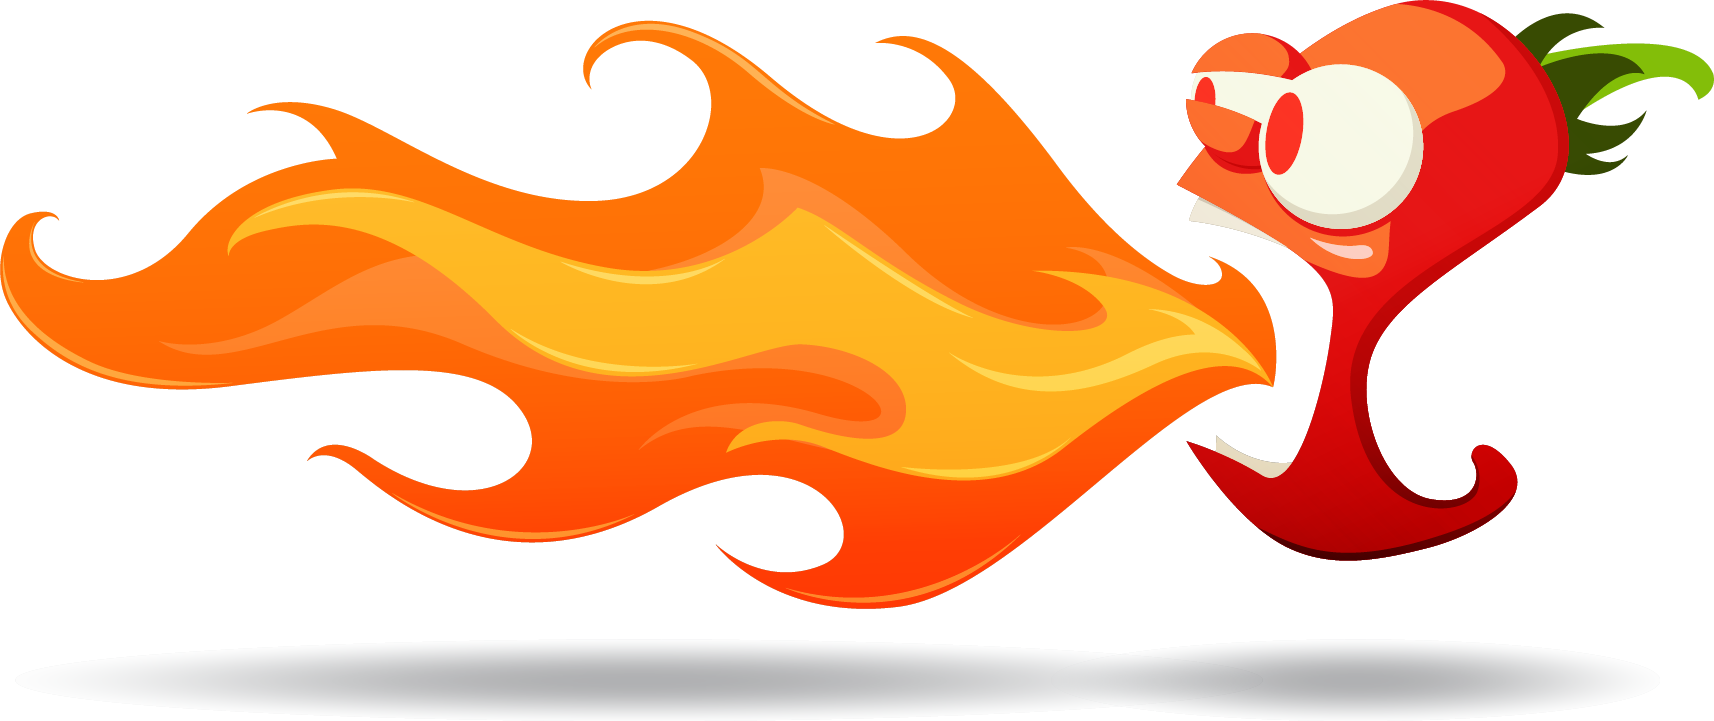 Insane Logo Hot Chili